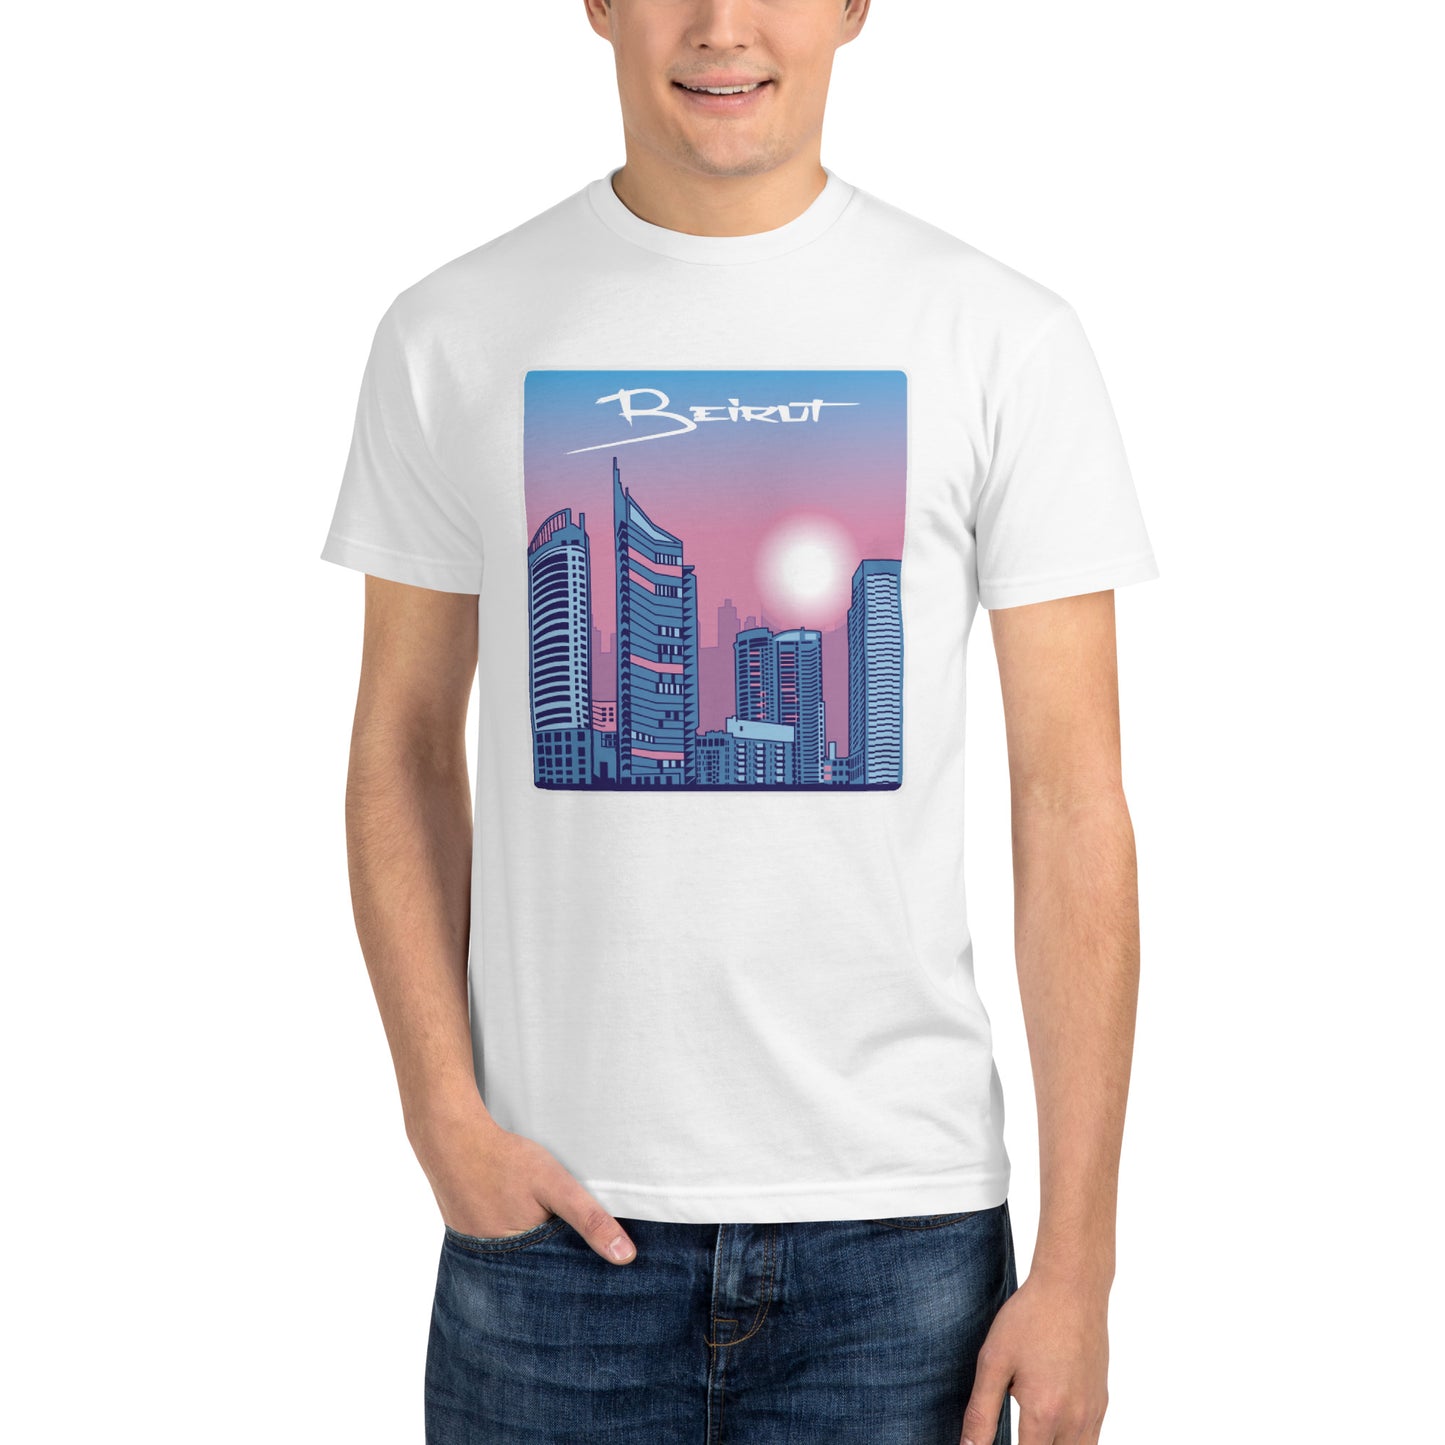 Beirut Skyline Vaporwave Aesthetic T-Shirt